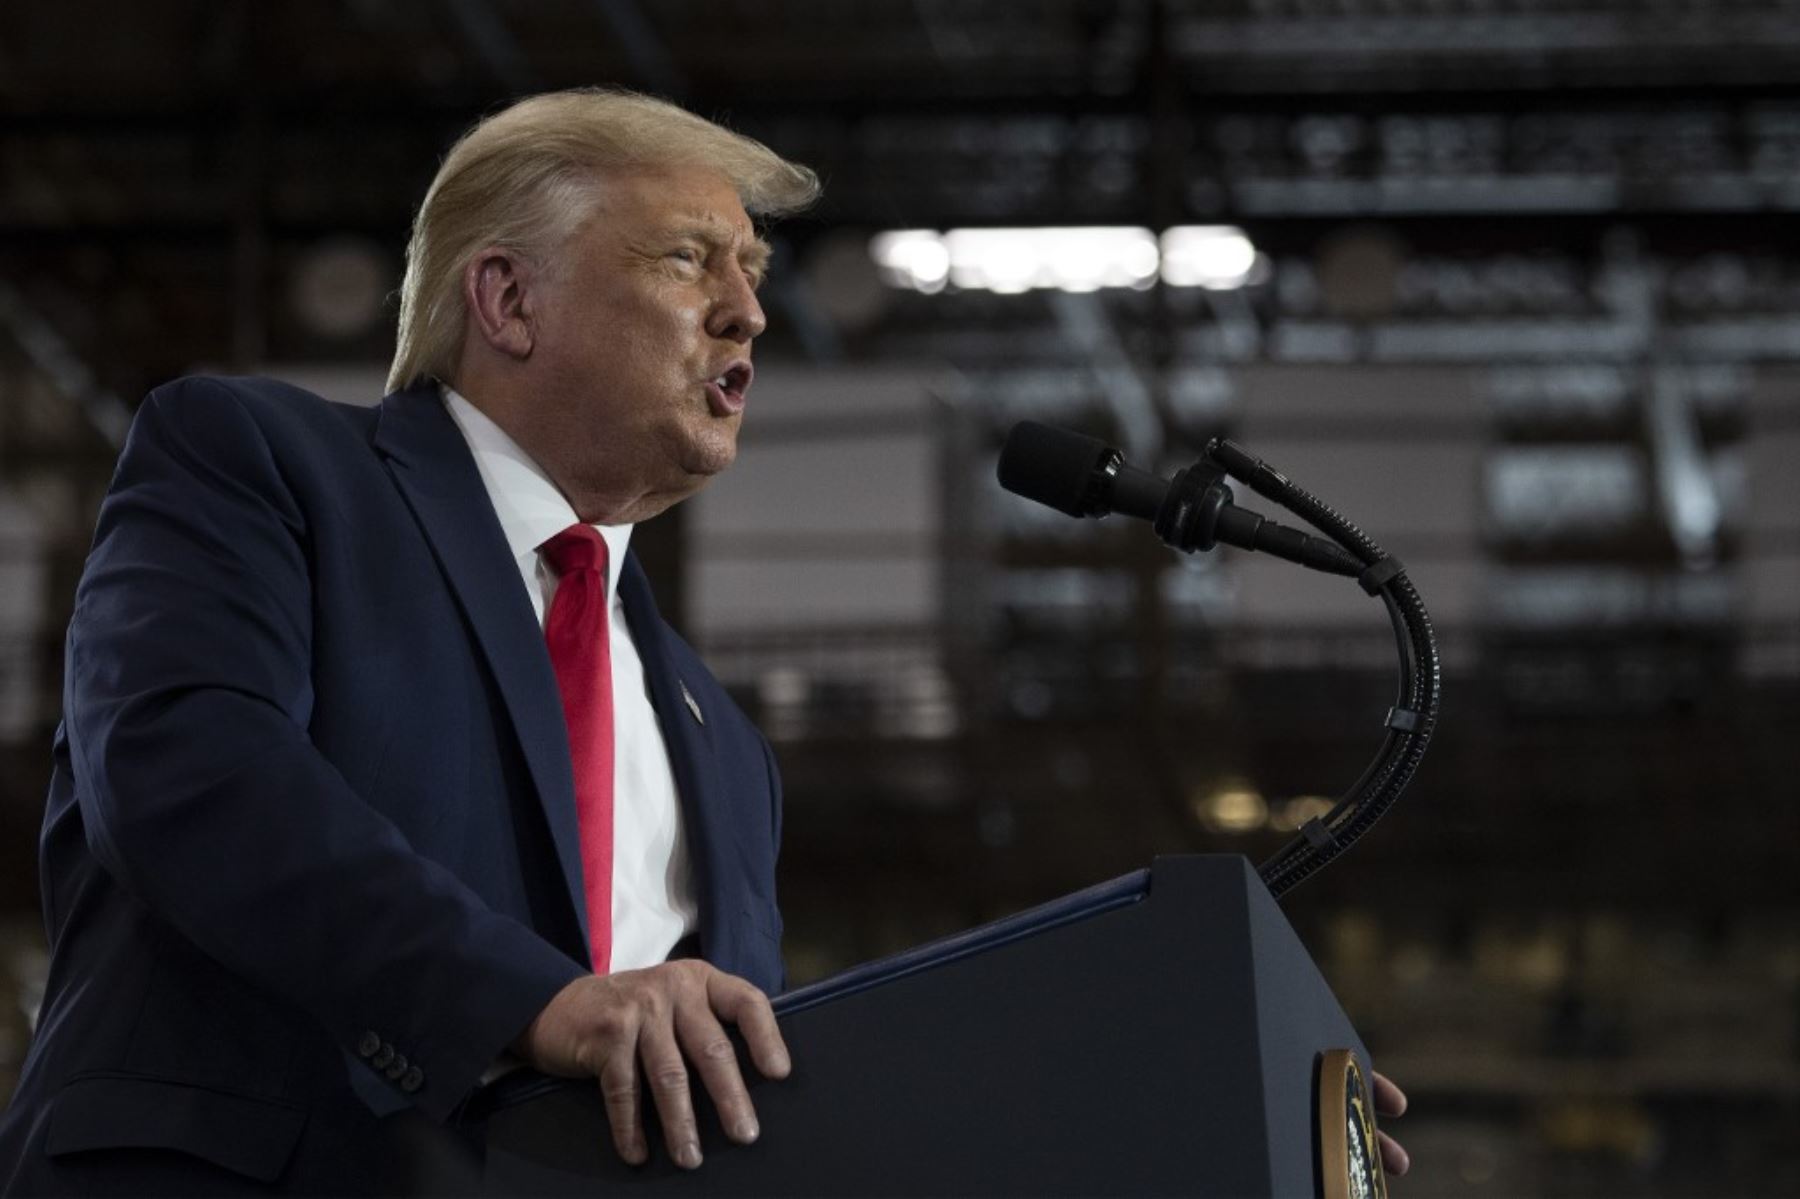 El presidente de los Estados Unidos, Donald Trump, habla después de recorrer la planta de fabricación de Whirlpool Corporation en Clyde, Ohio.Foto:AFP